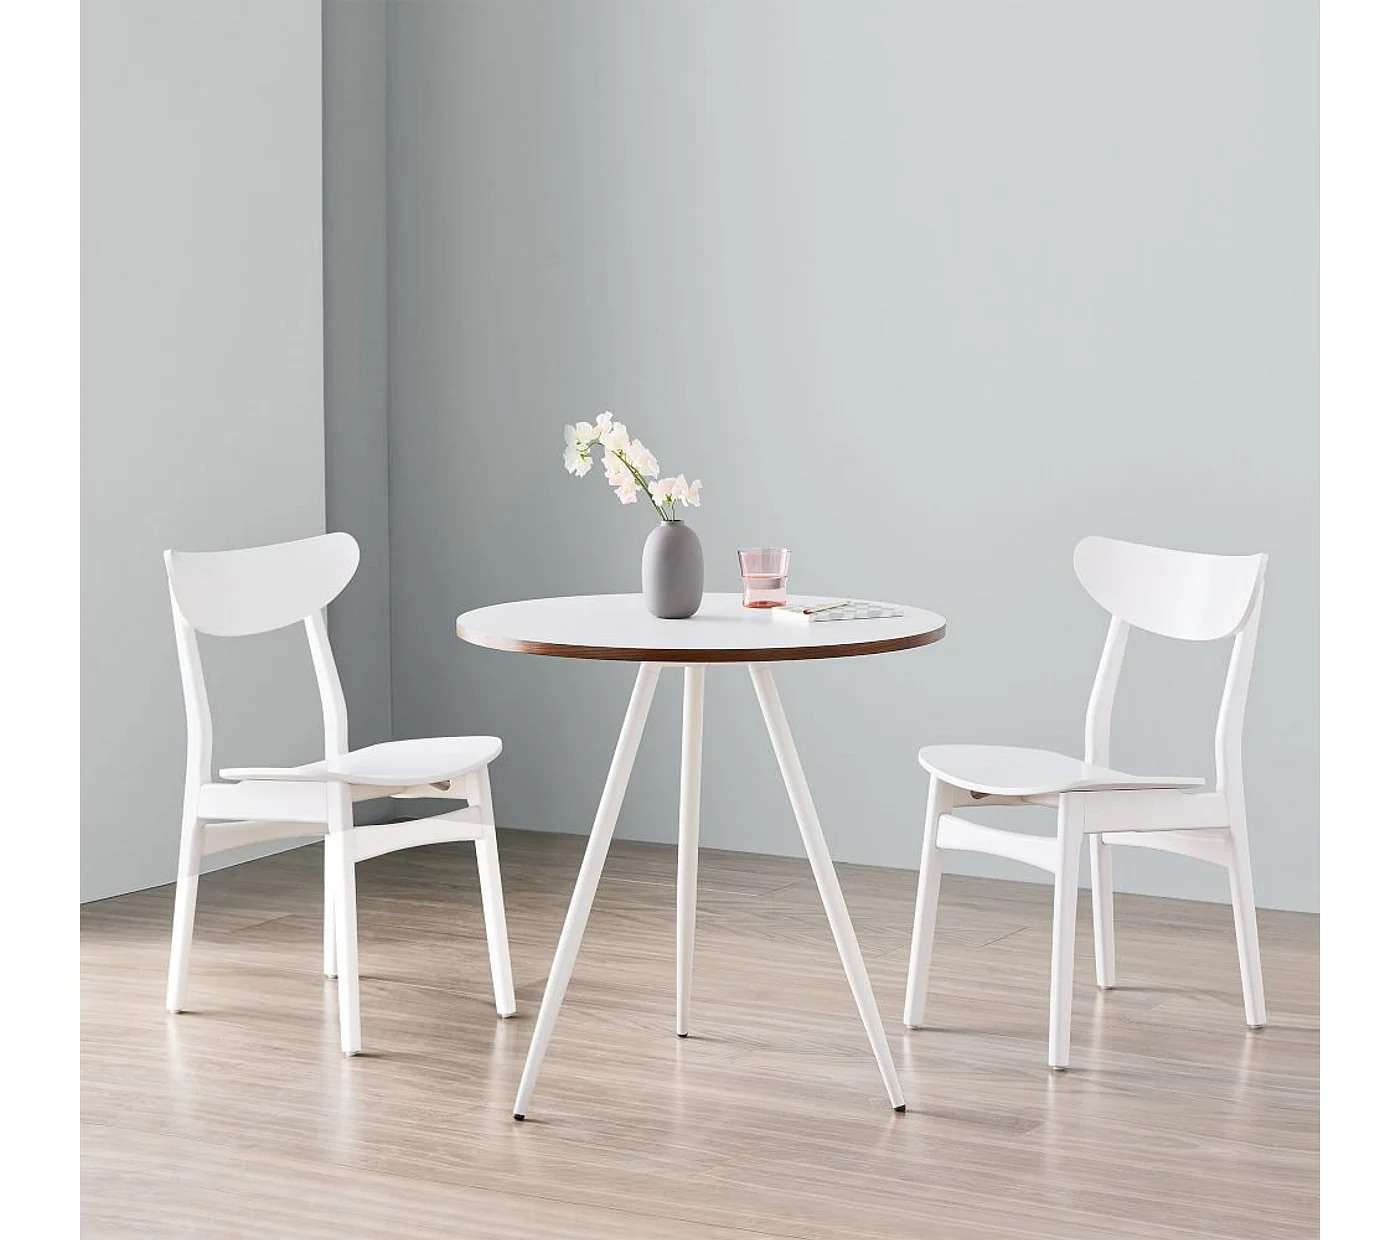 En Bistro Table – White Laminate